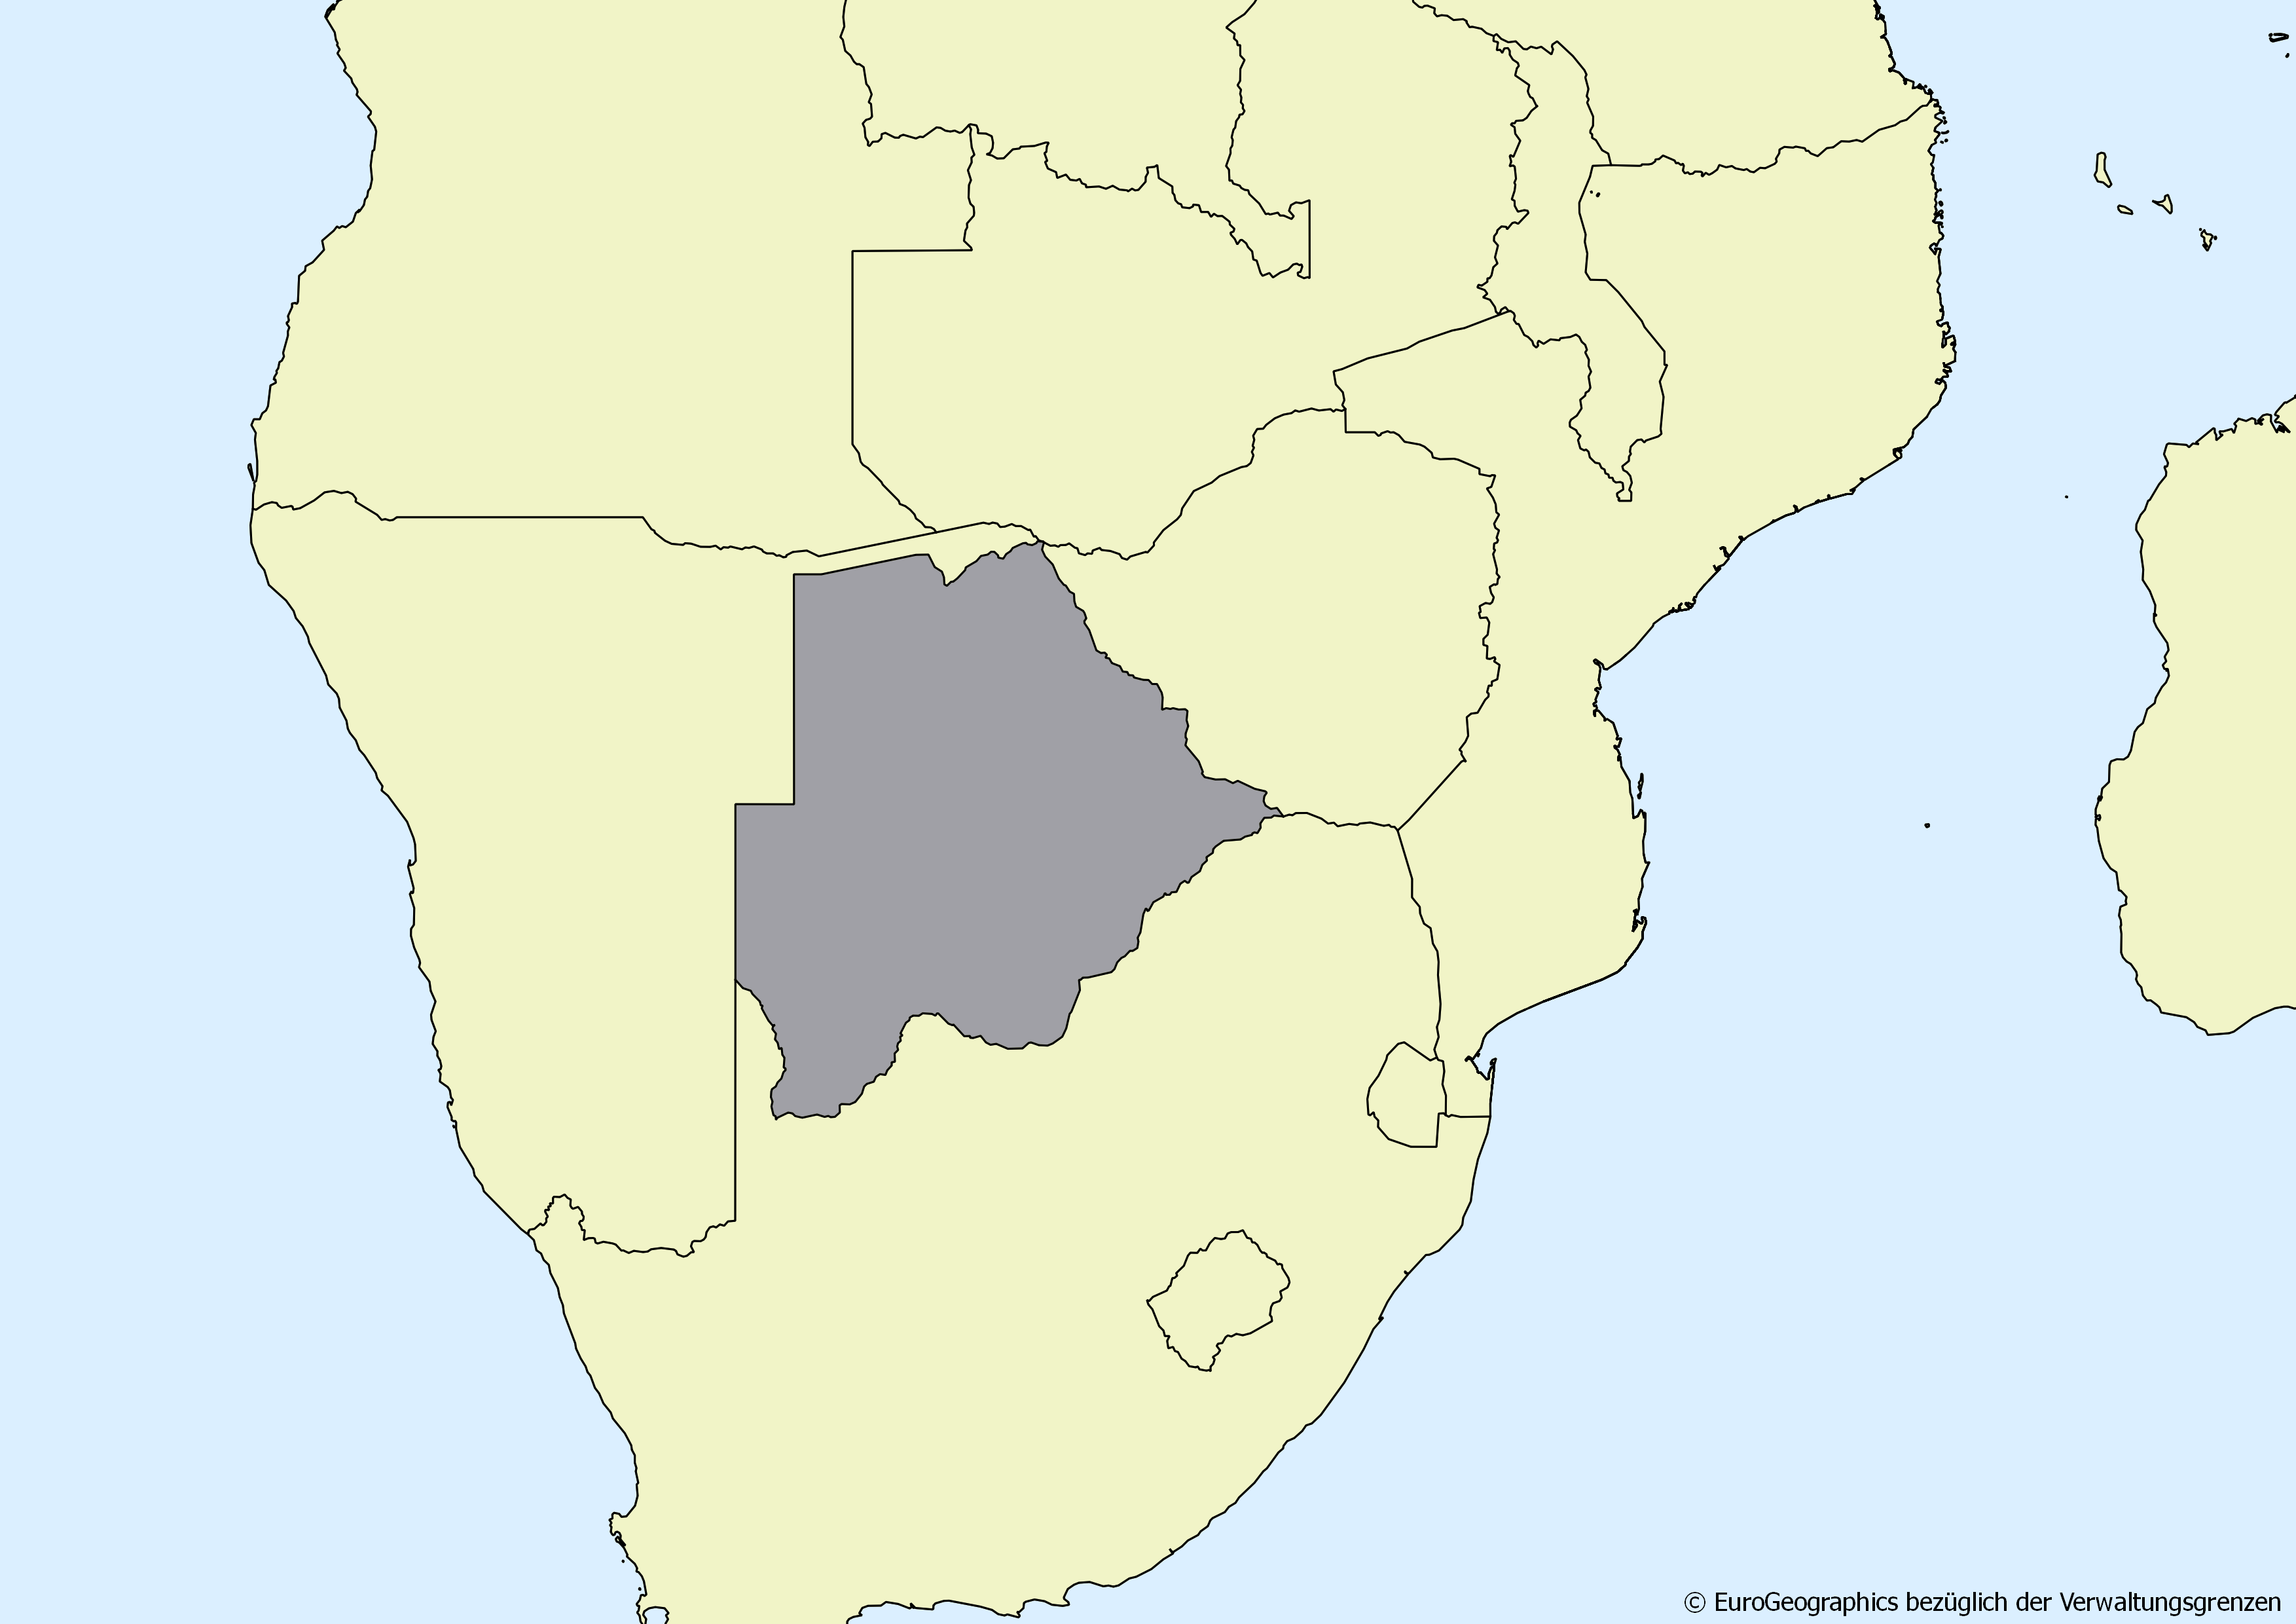 Ausschnitt einer Karte des afrikanischen Kontinents mit Ländergrenzen. Im Zentrum steht Botsuana grau hervorgehoben